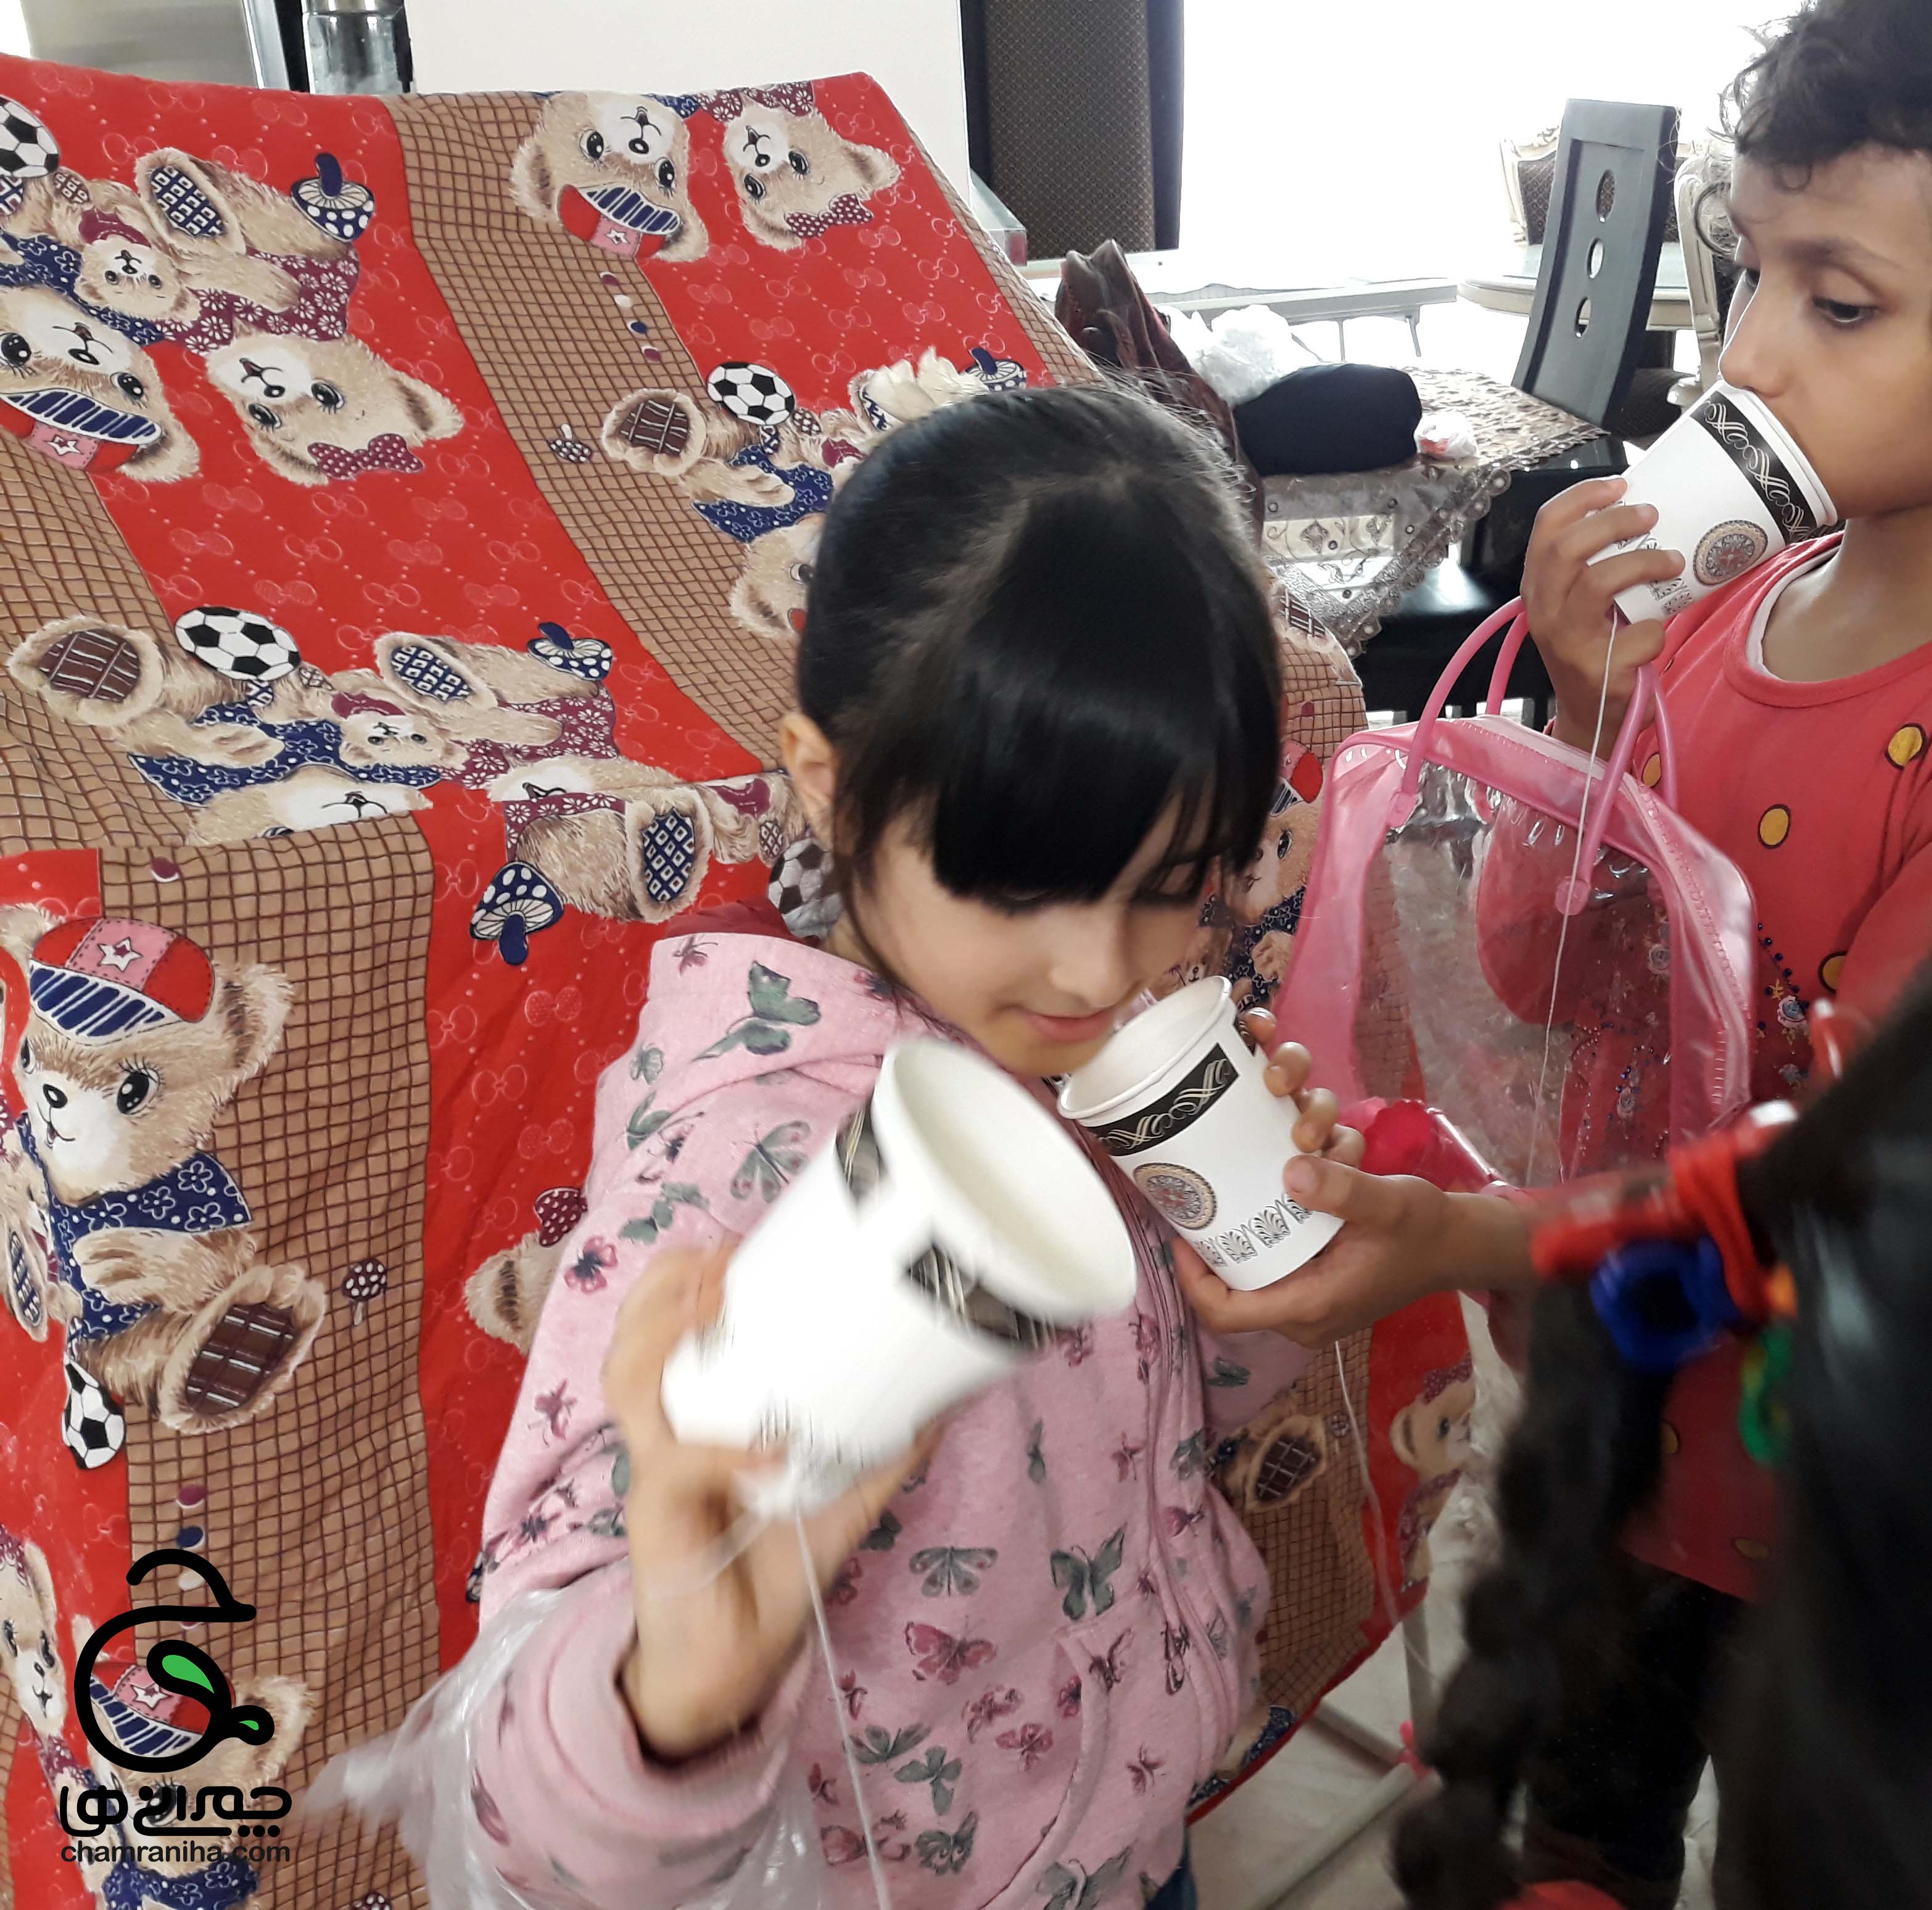 خانواده بزرگ شهید چمران اردوی خانگی و ساخت تلفن دست ساز